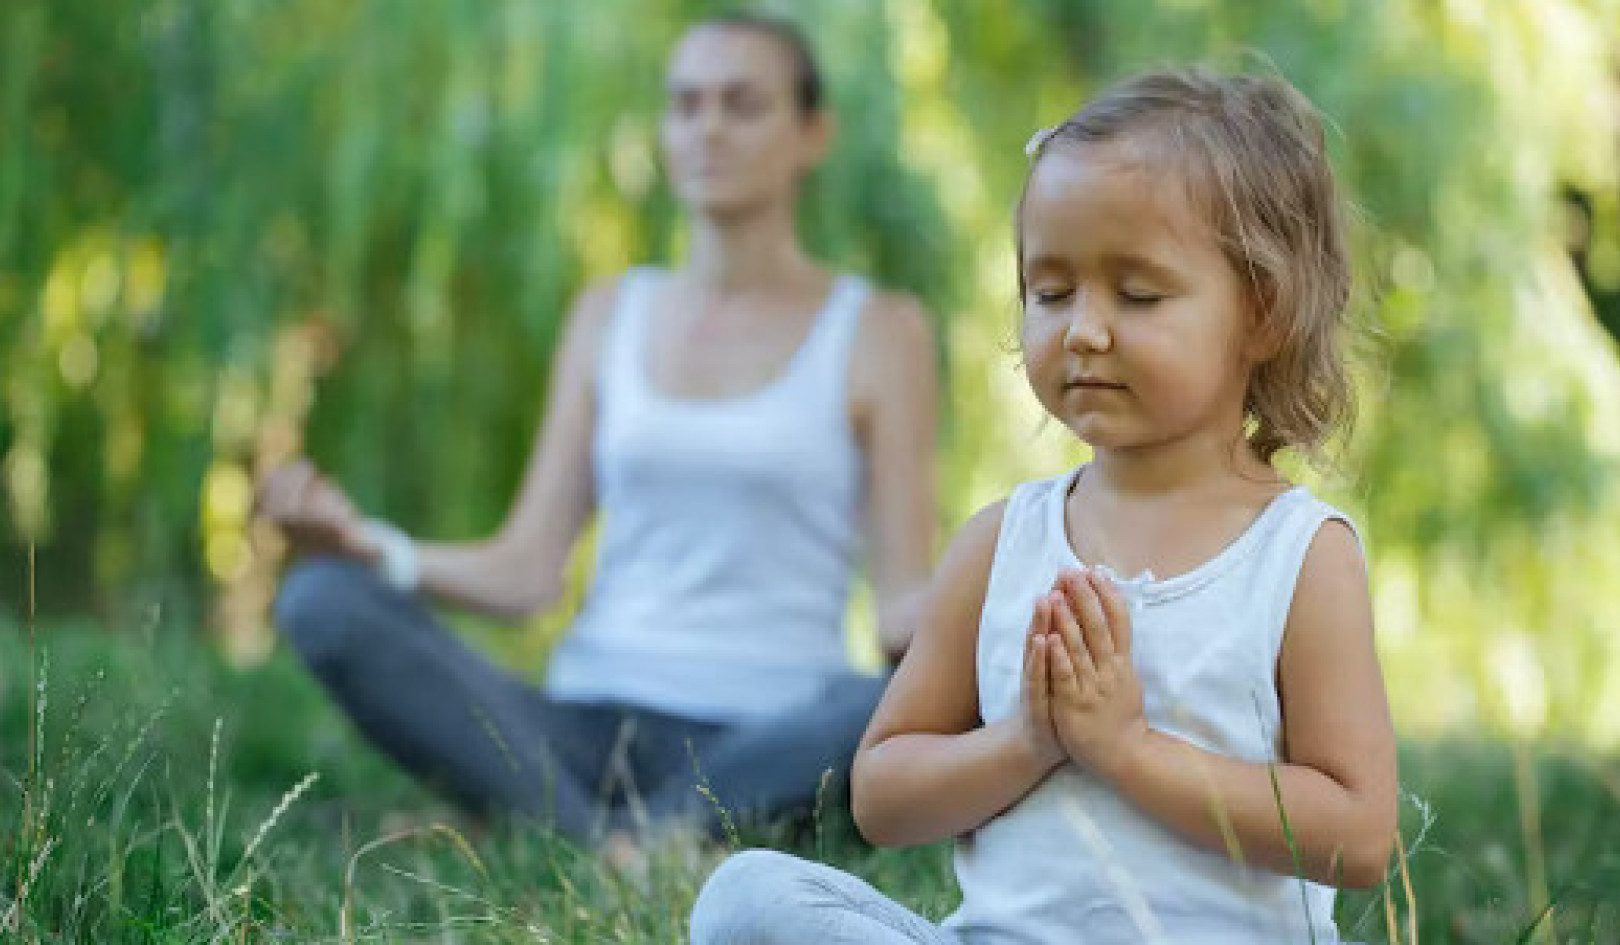 Medytacja może leczyć dzieci cierpiące na urazy, trudne diagnozy lub stres